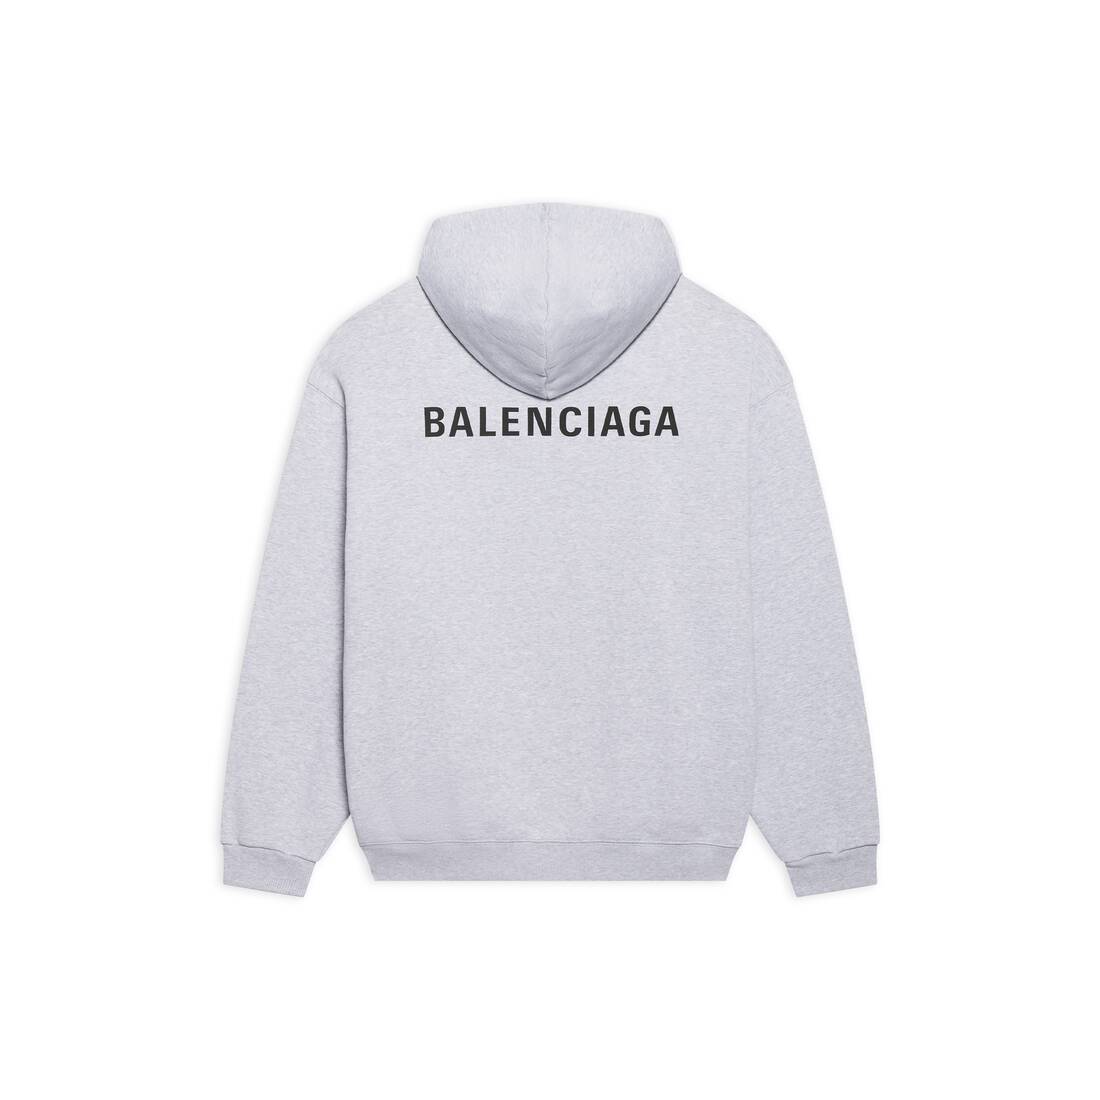 HerrenHoodies von Balenciaga  OnlineSchlussverkauf  Bis zu 50 Rabatt   Lyst DE